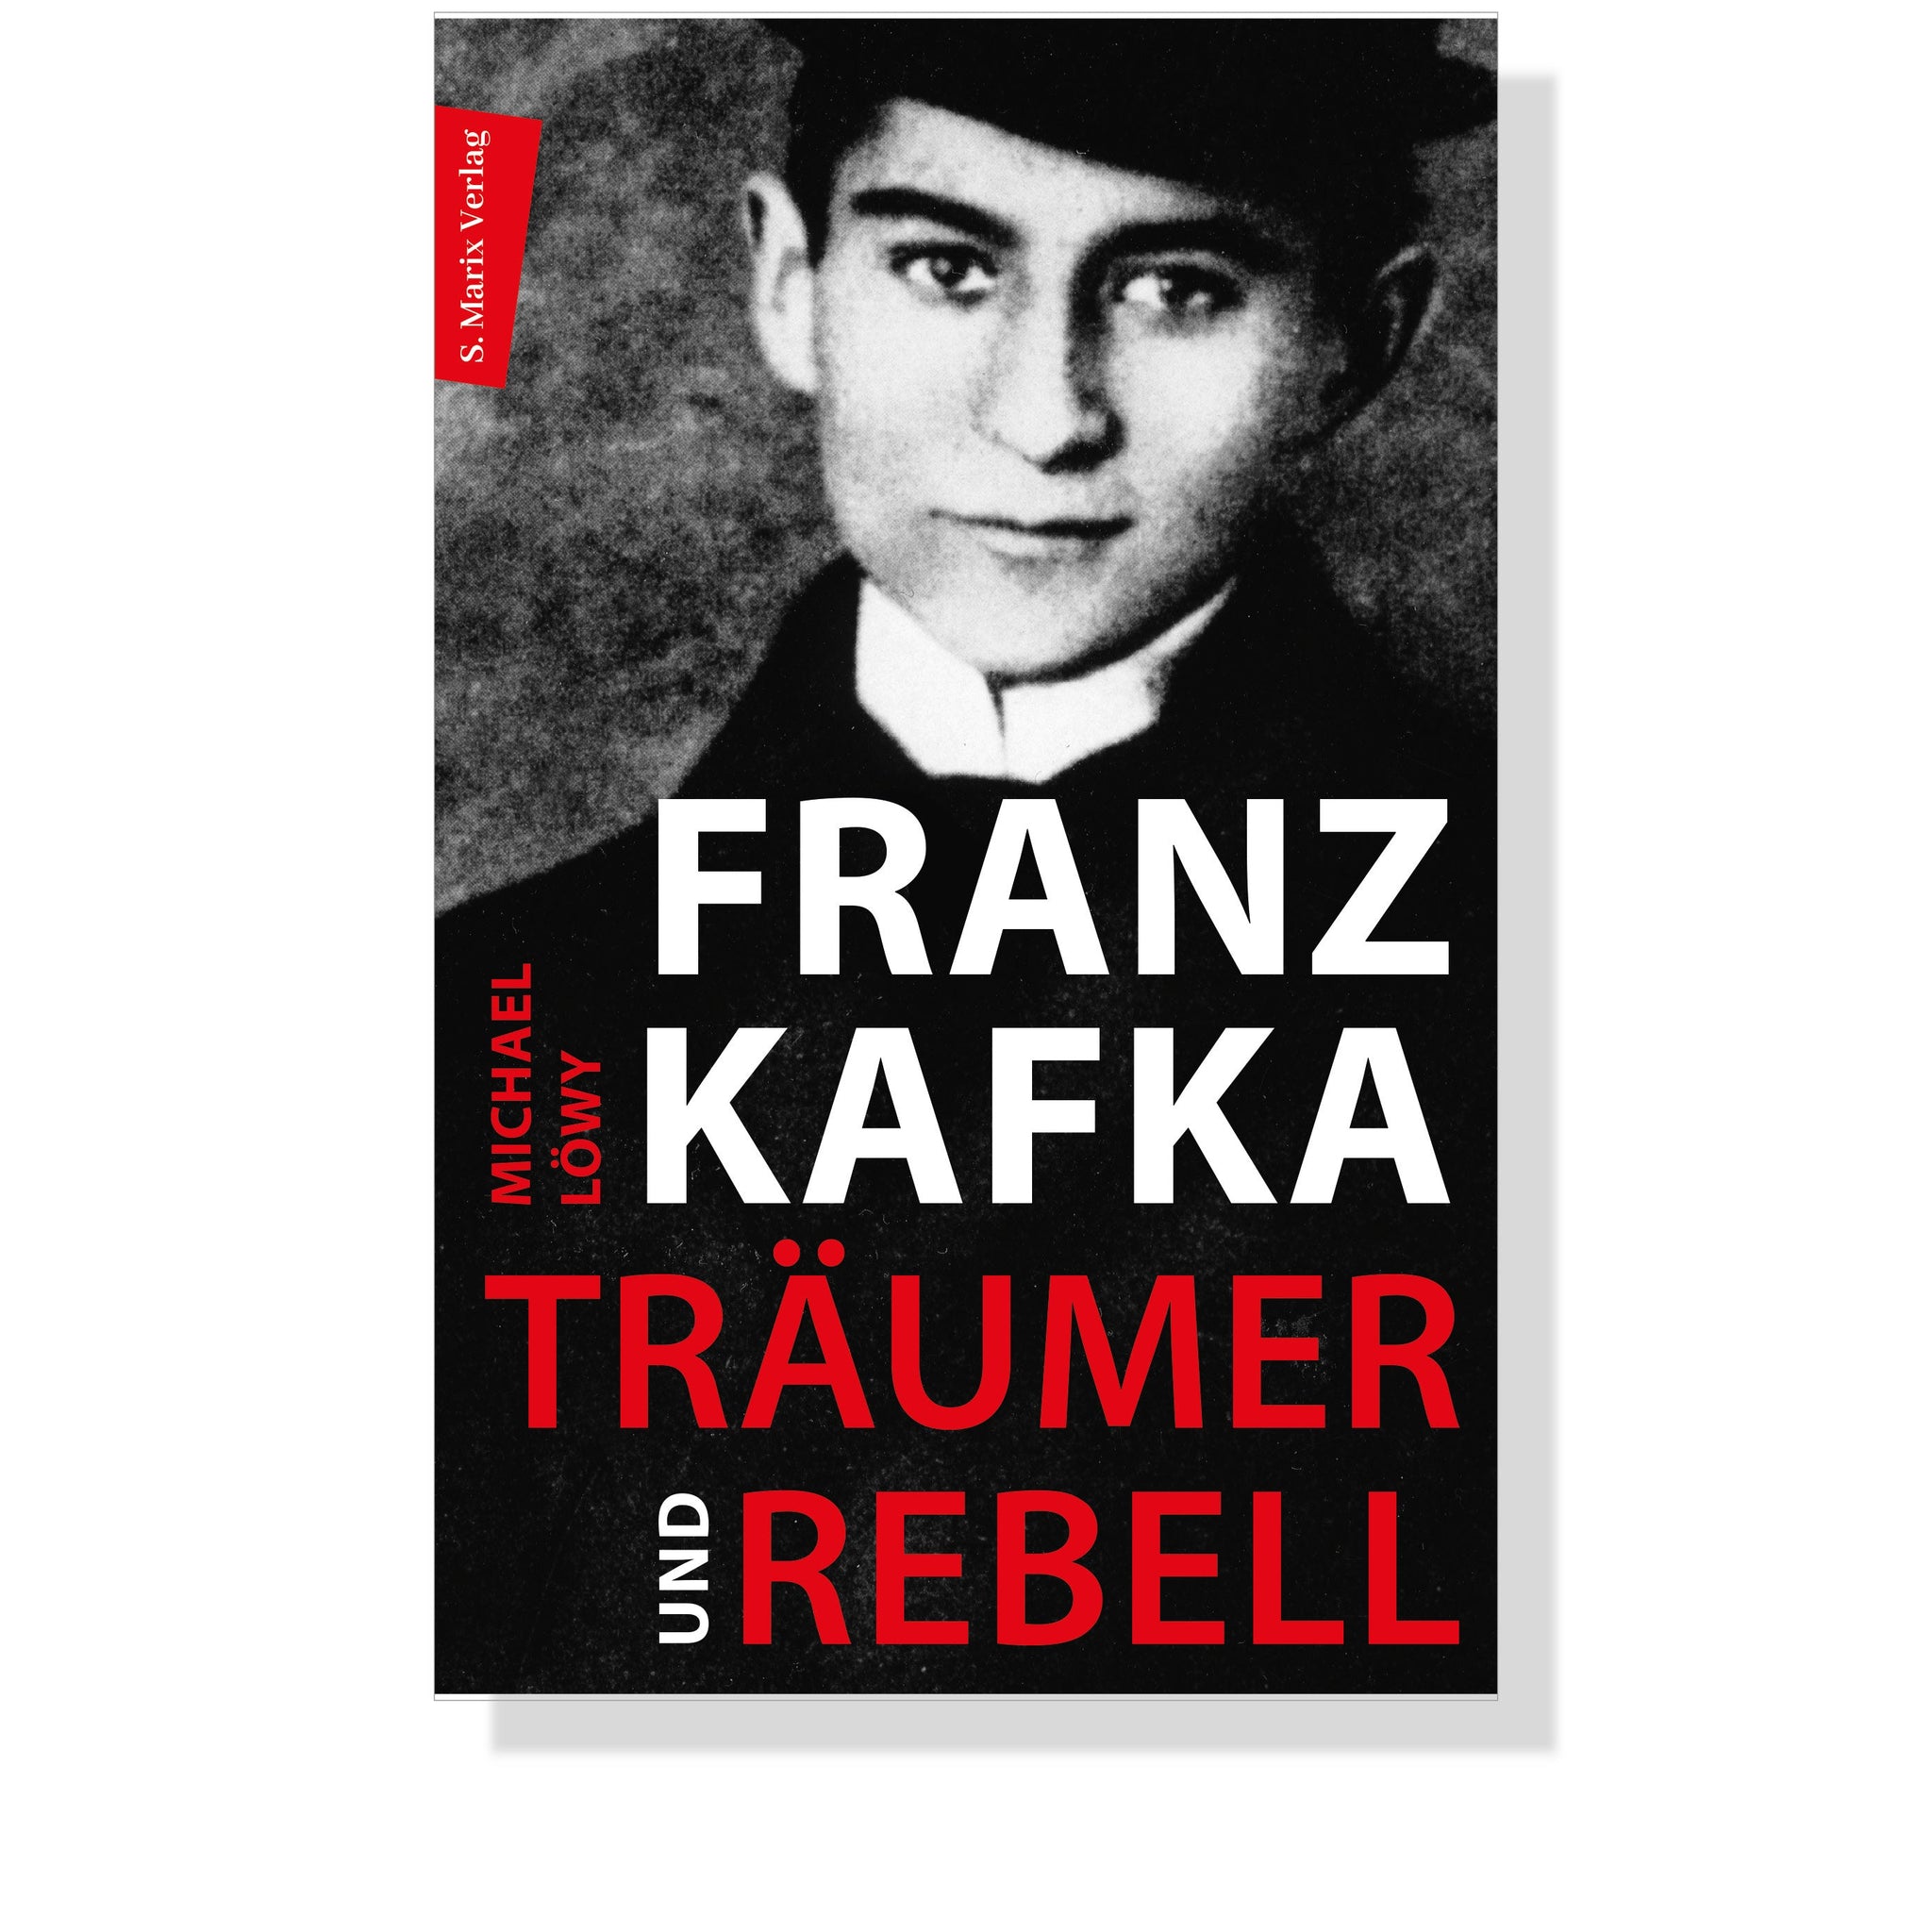 Franz Kafka - Träumer und Rebell